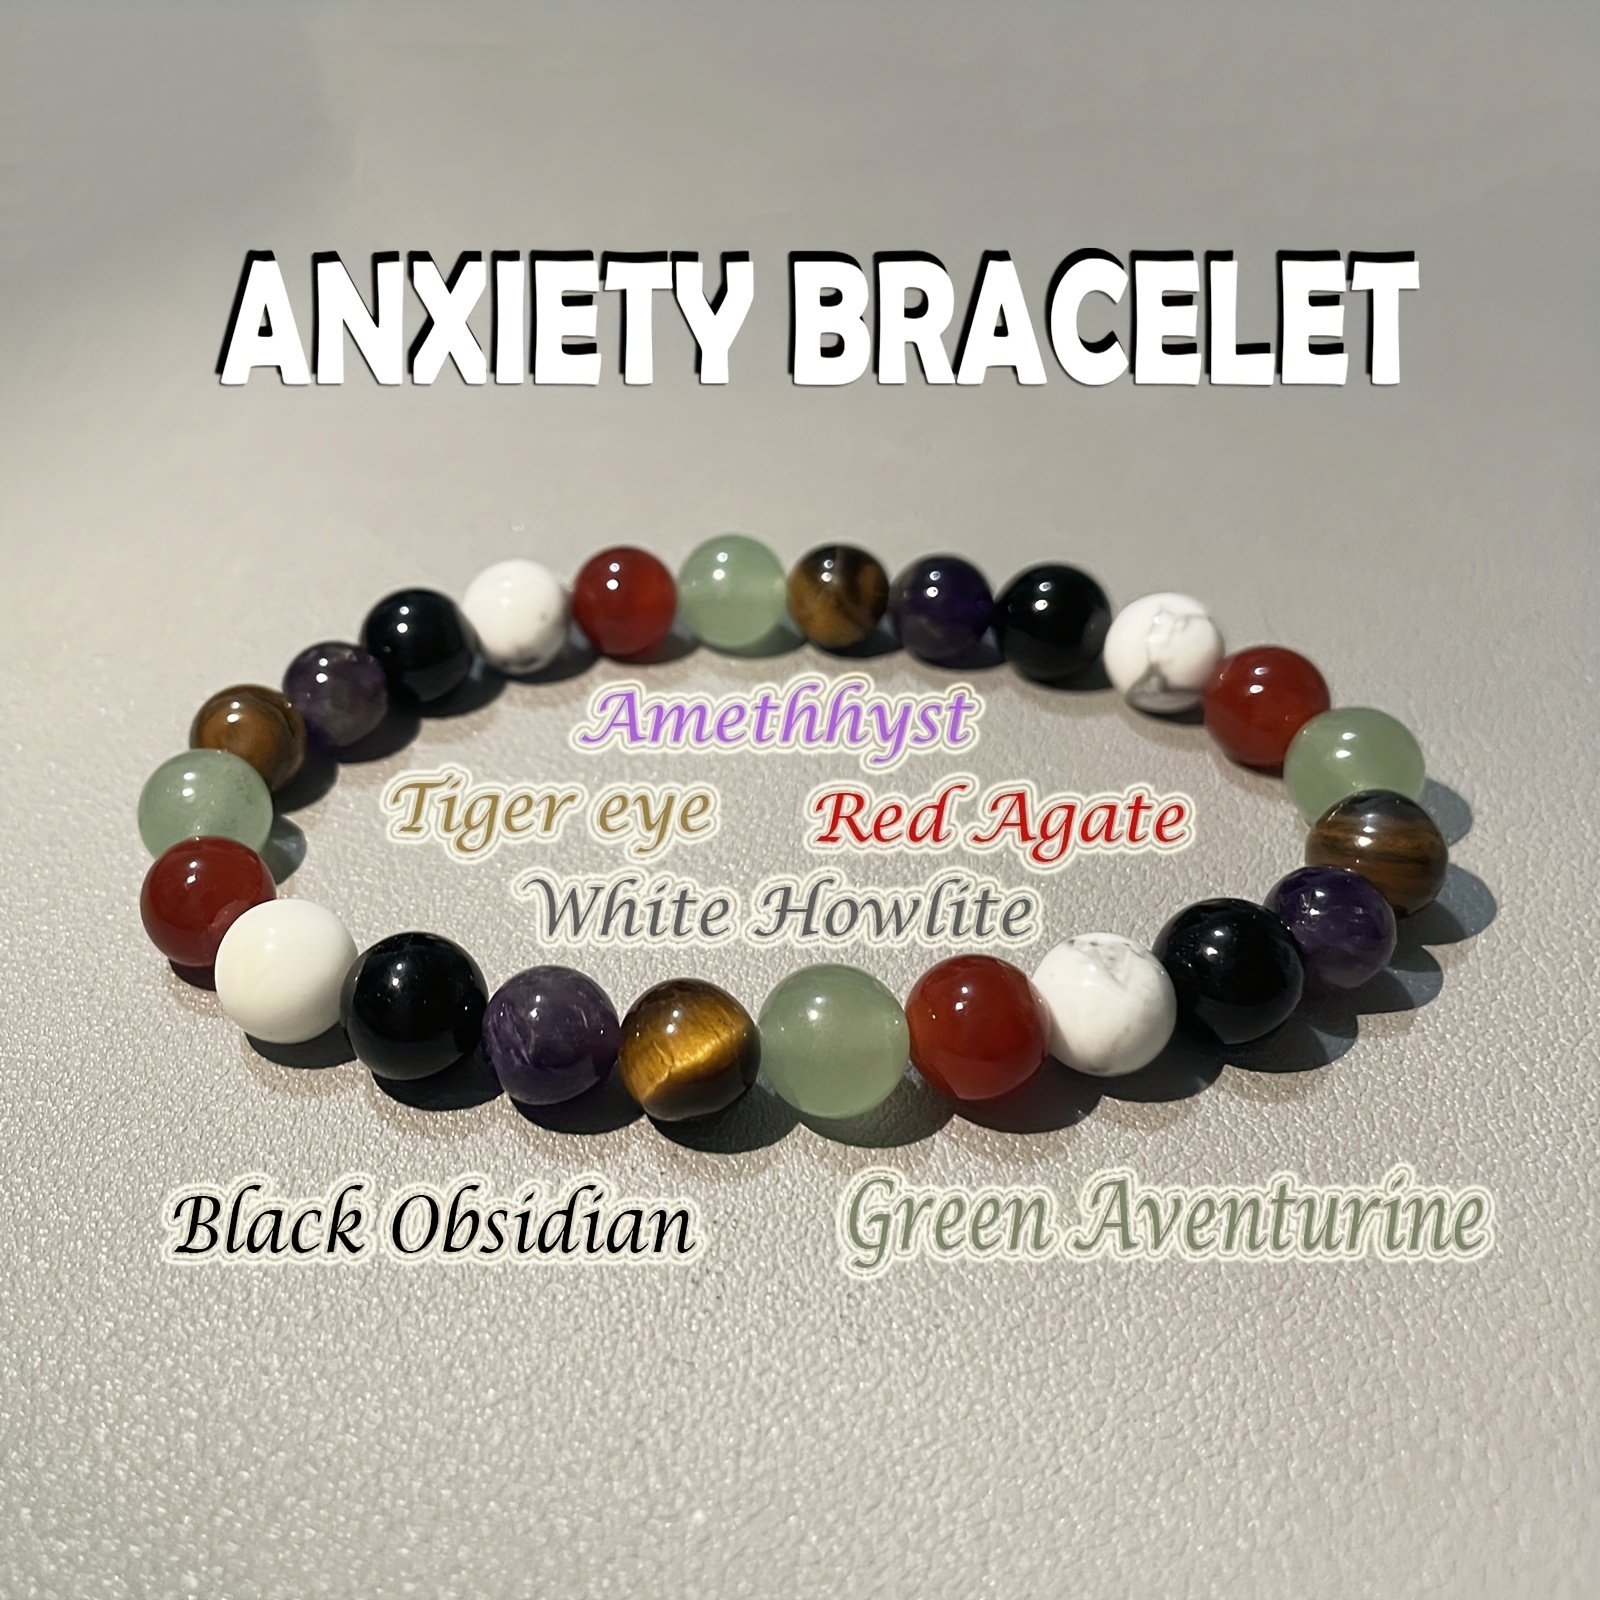 Anxiety bracelet